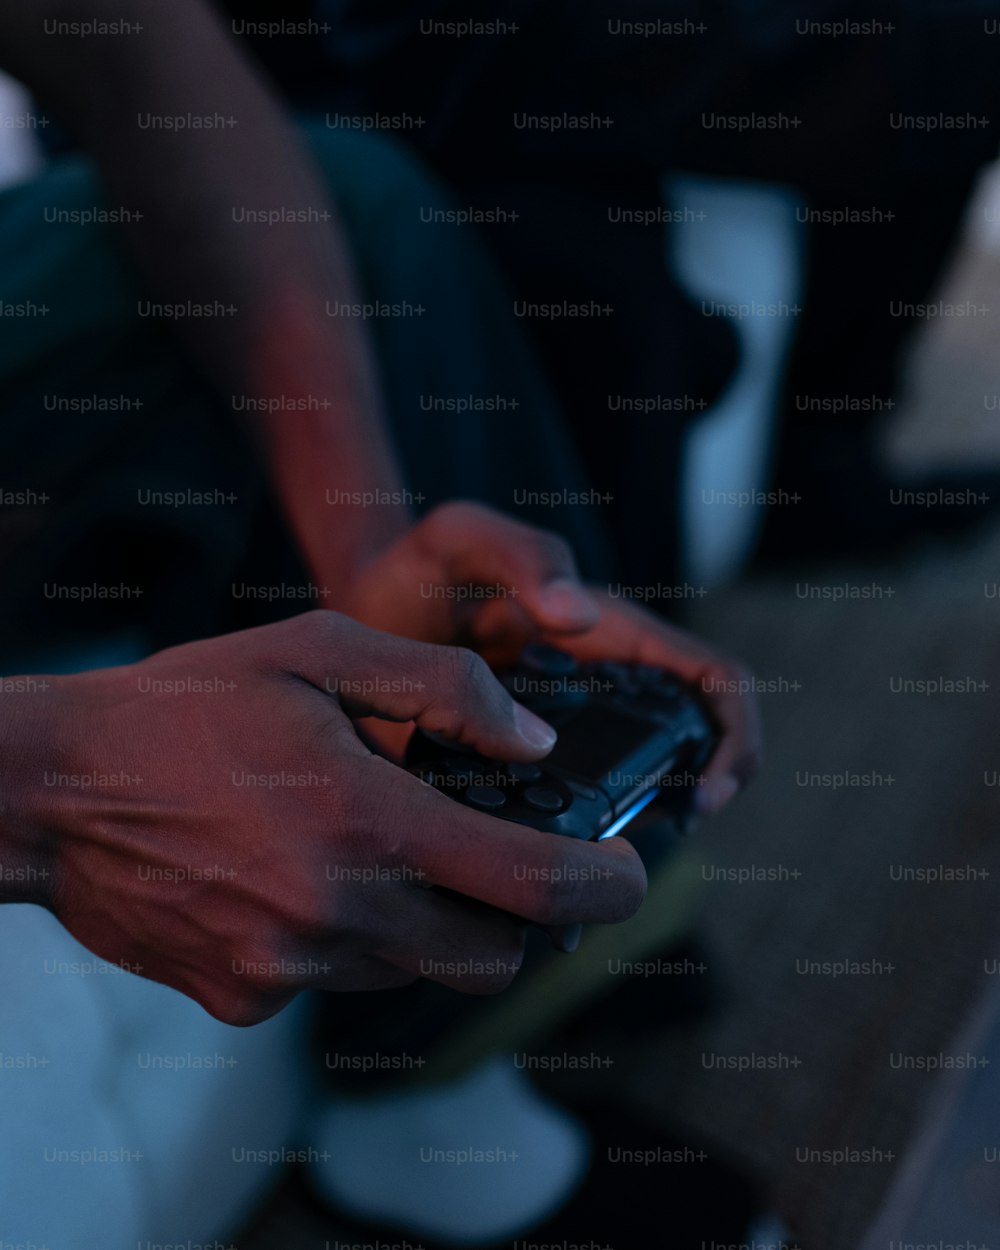 uma pessoa segurando um telefone celular em suas mãos